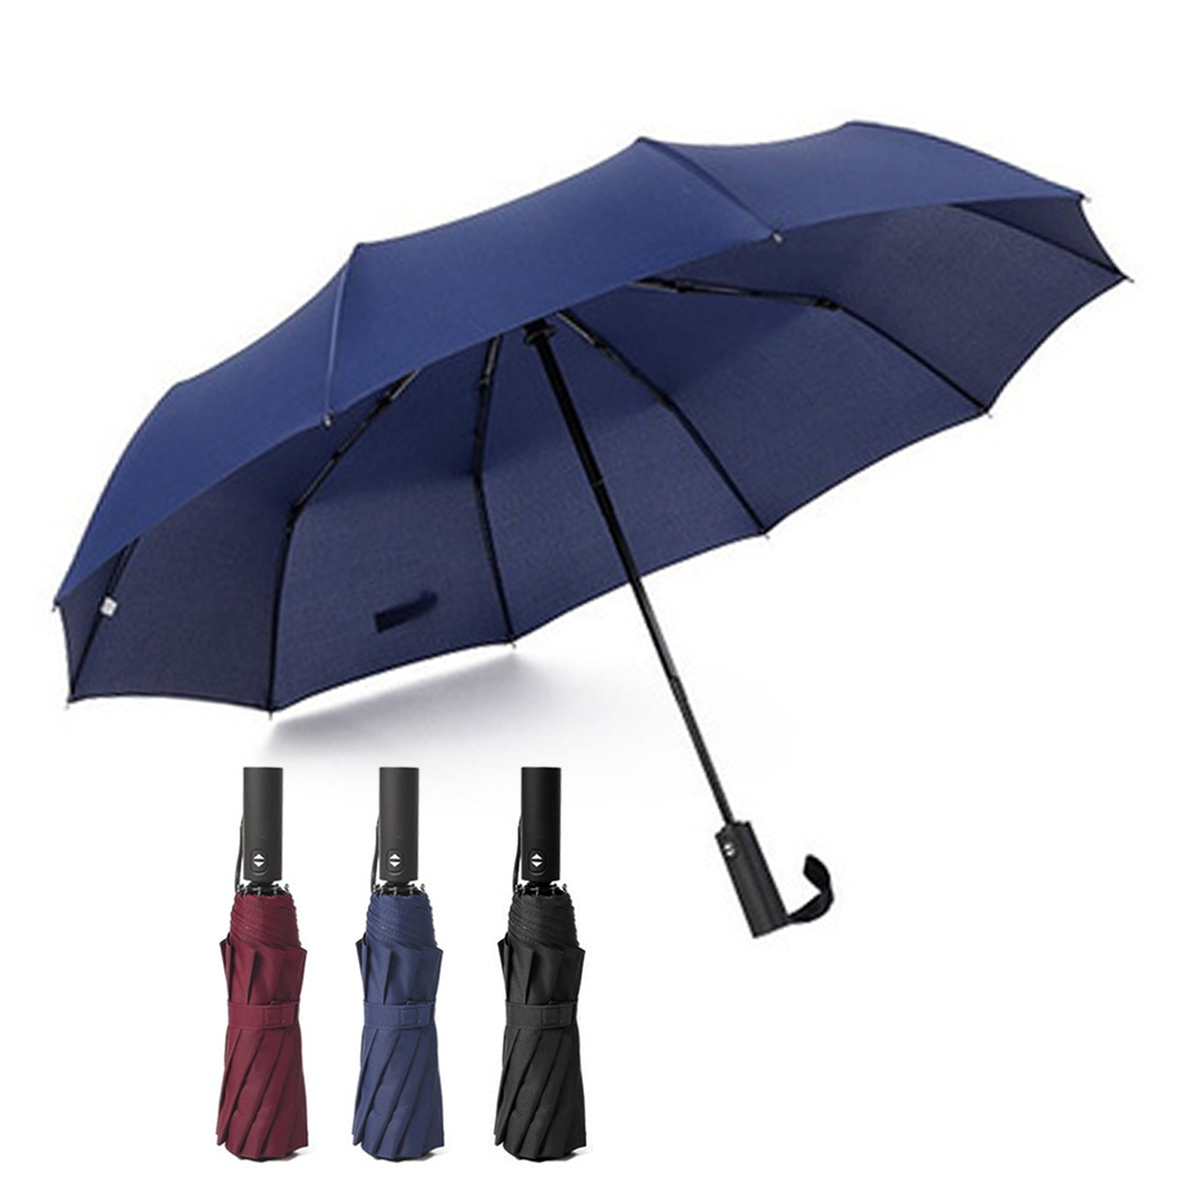 23” Auto Open/Close Foldable Umbrella